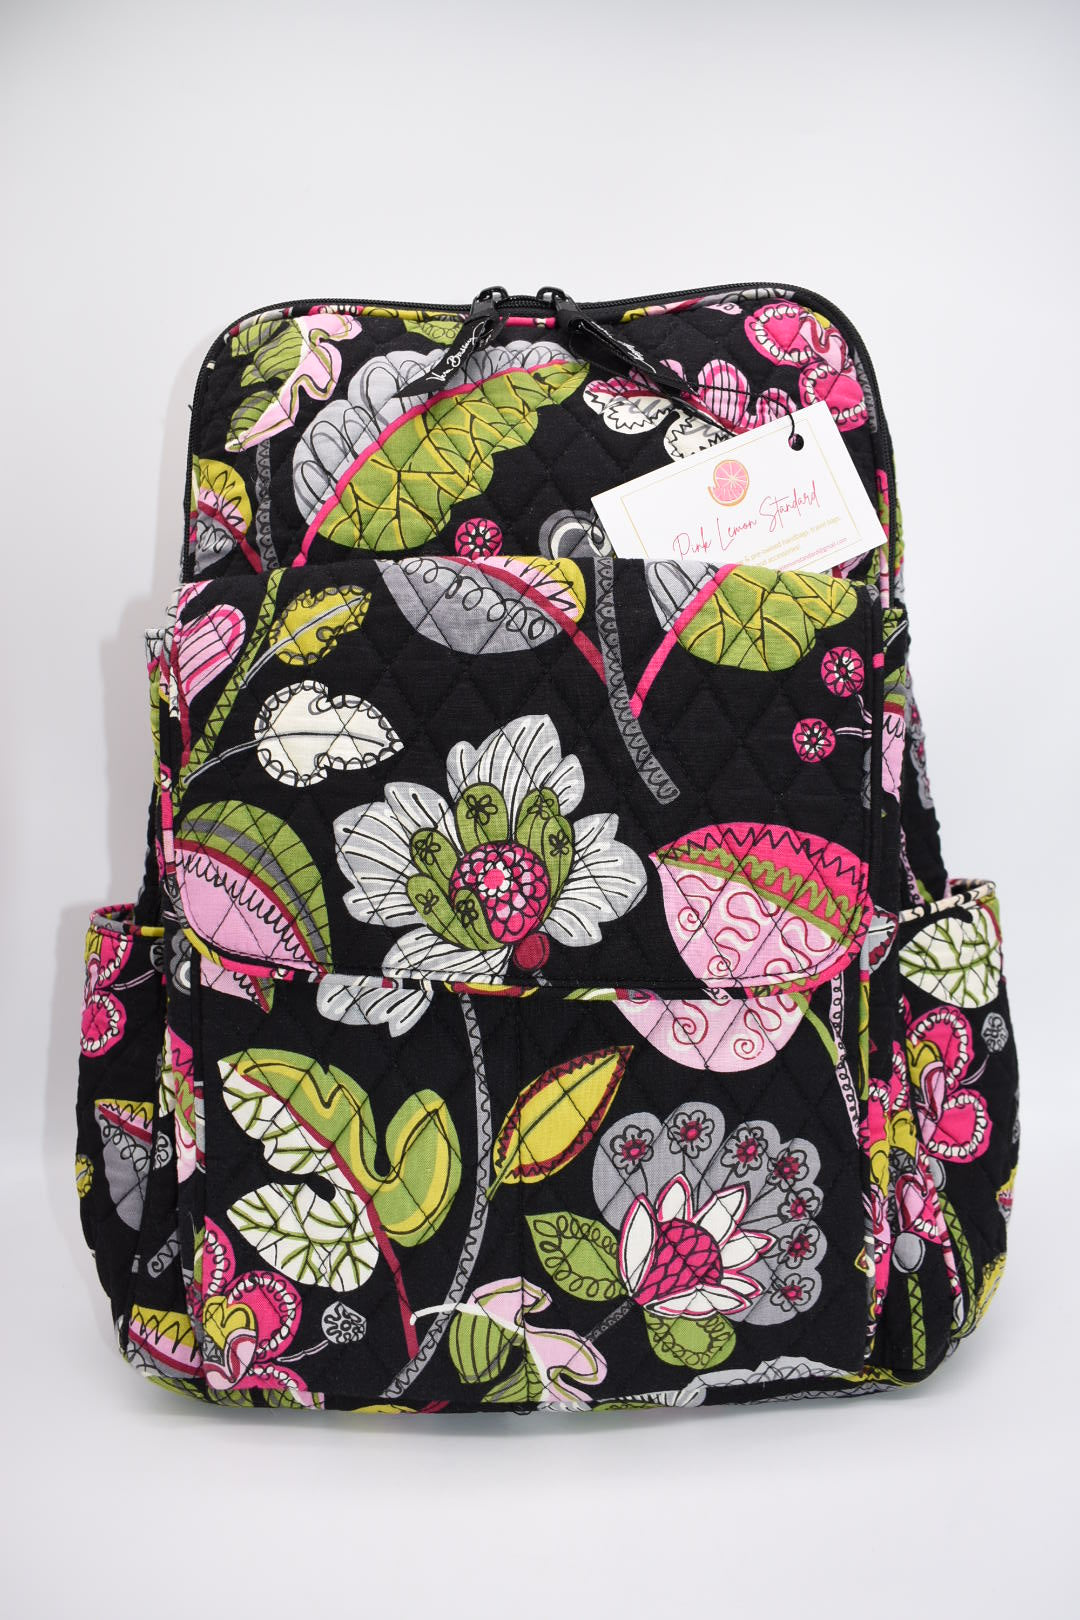 Vera Bradley Ultimate Backpack in "Moon Blooms" Pattern